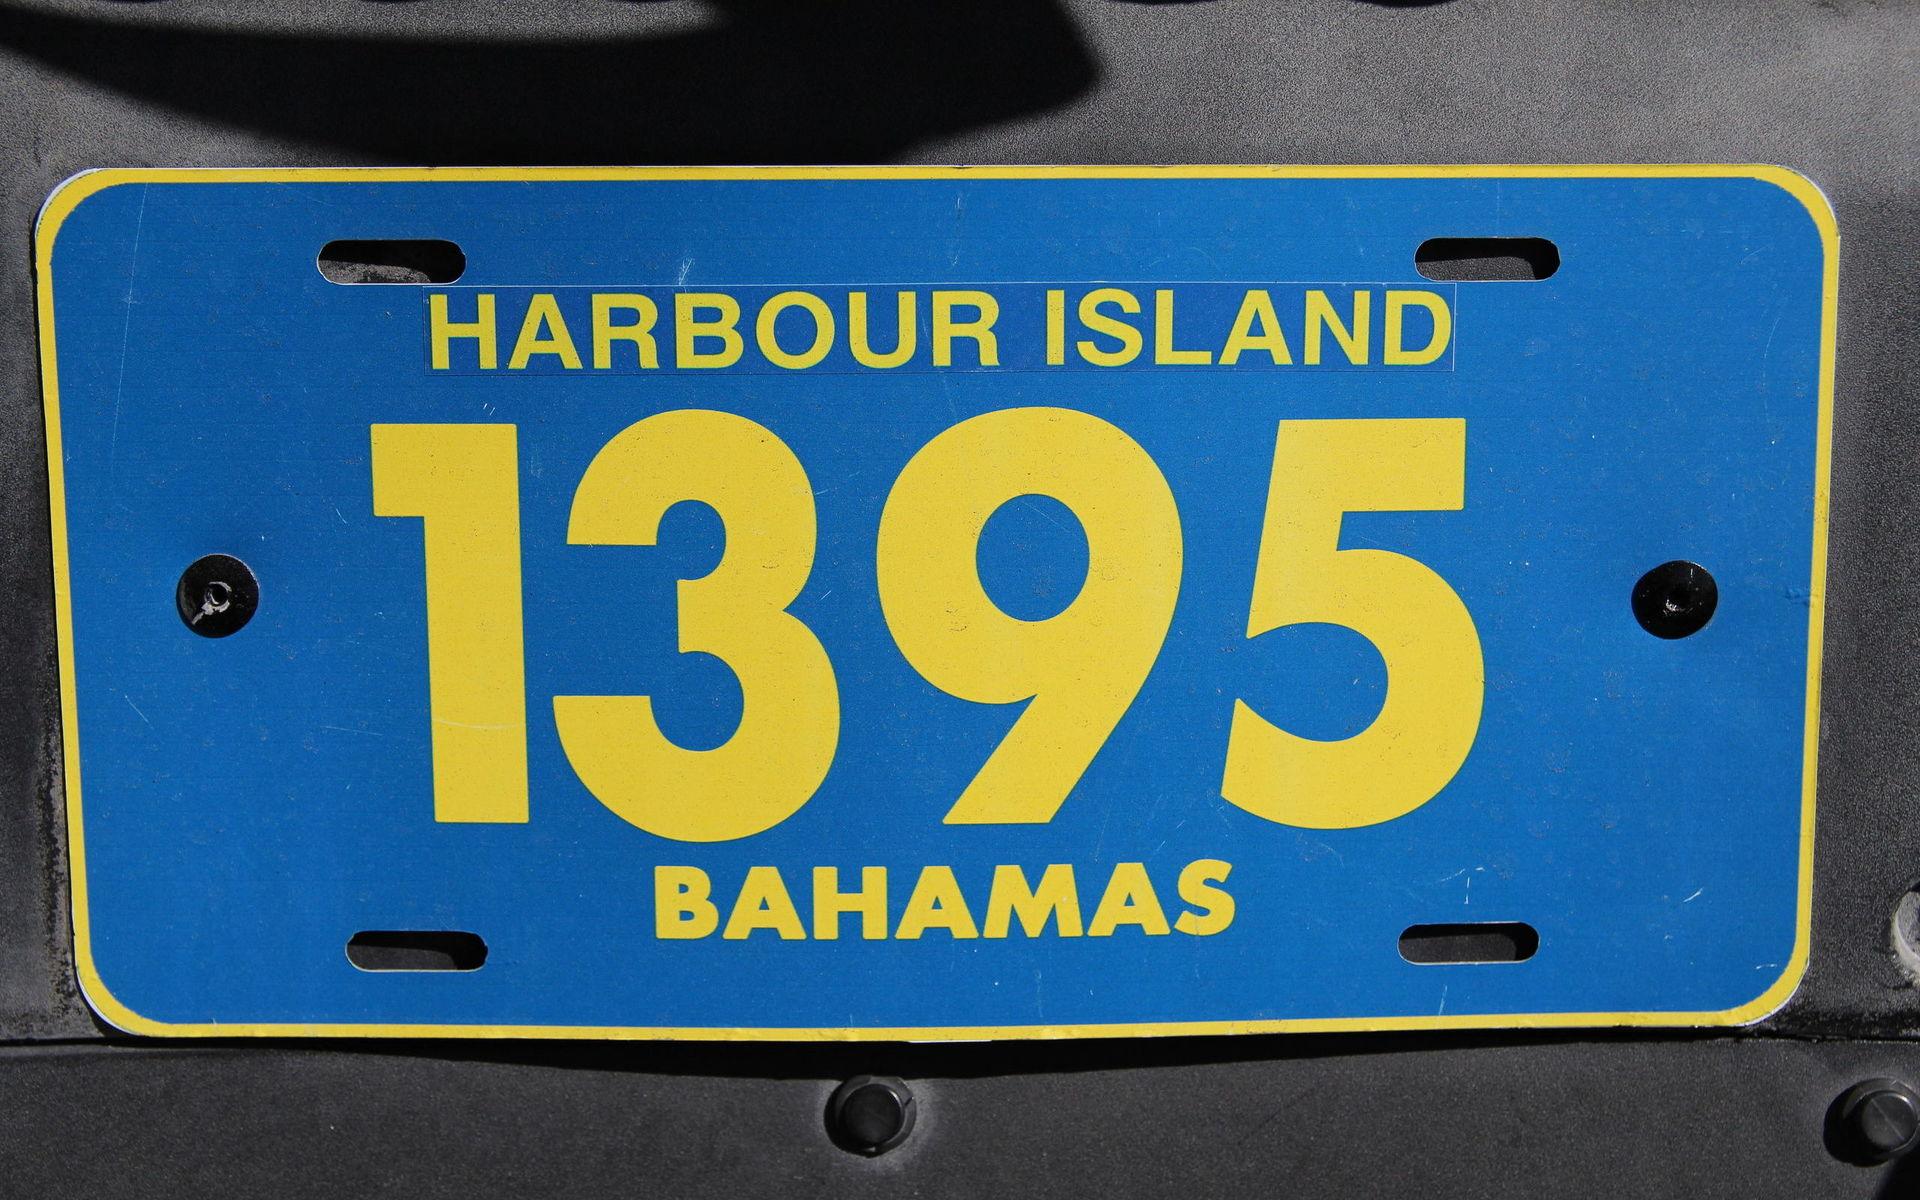 Vad gäller färger kan svenskar känna sig hemma i Bahamas. Det är blått och gult som gäller.